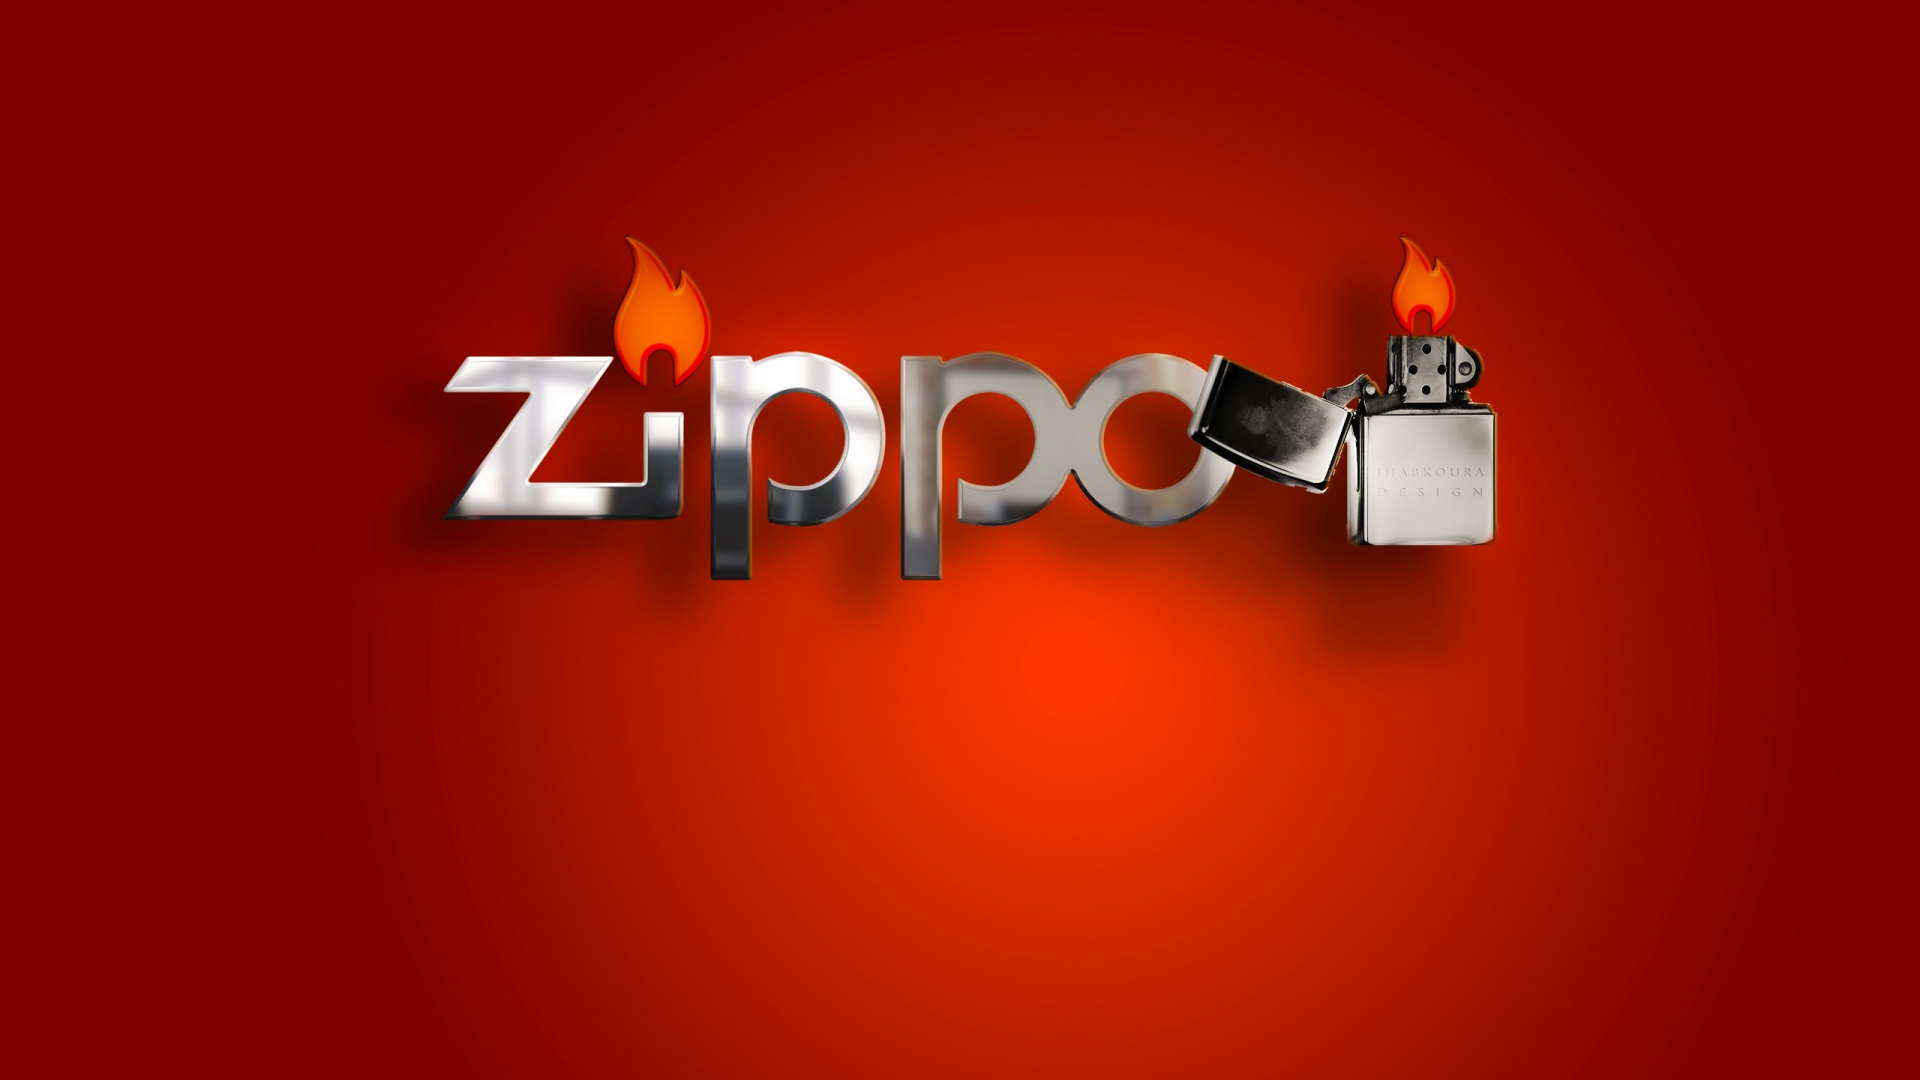 Zippo Lighter for 1920 x 1080 HDTV 1080p resolution